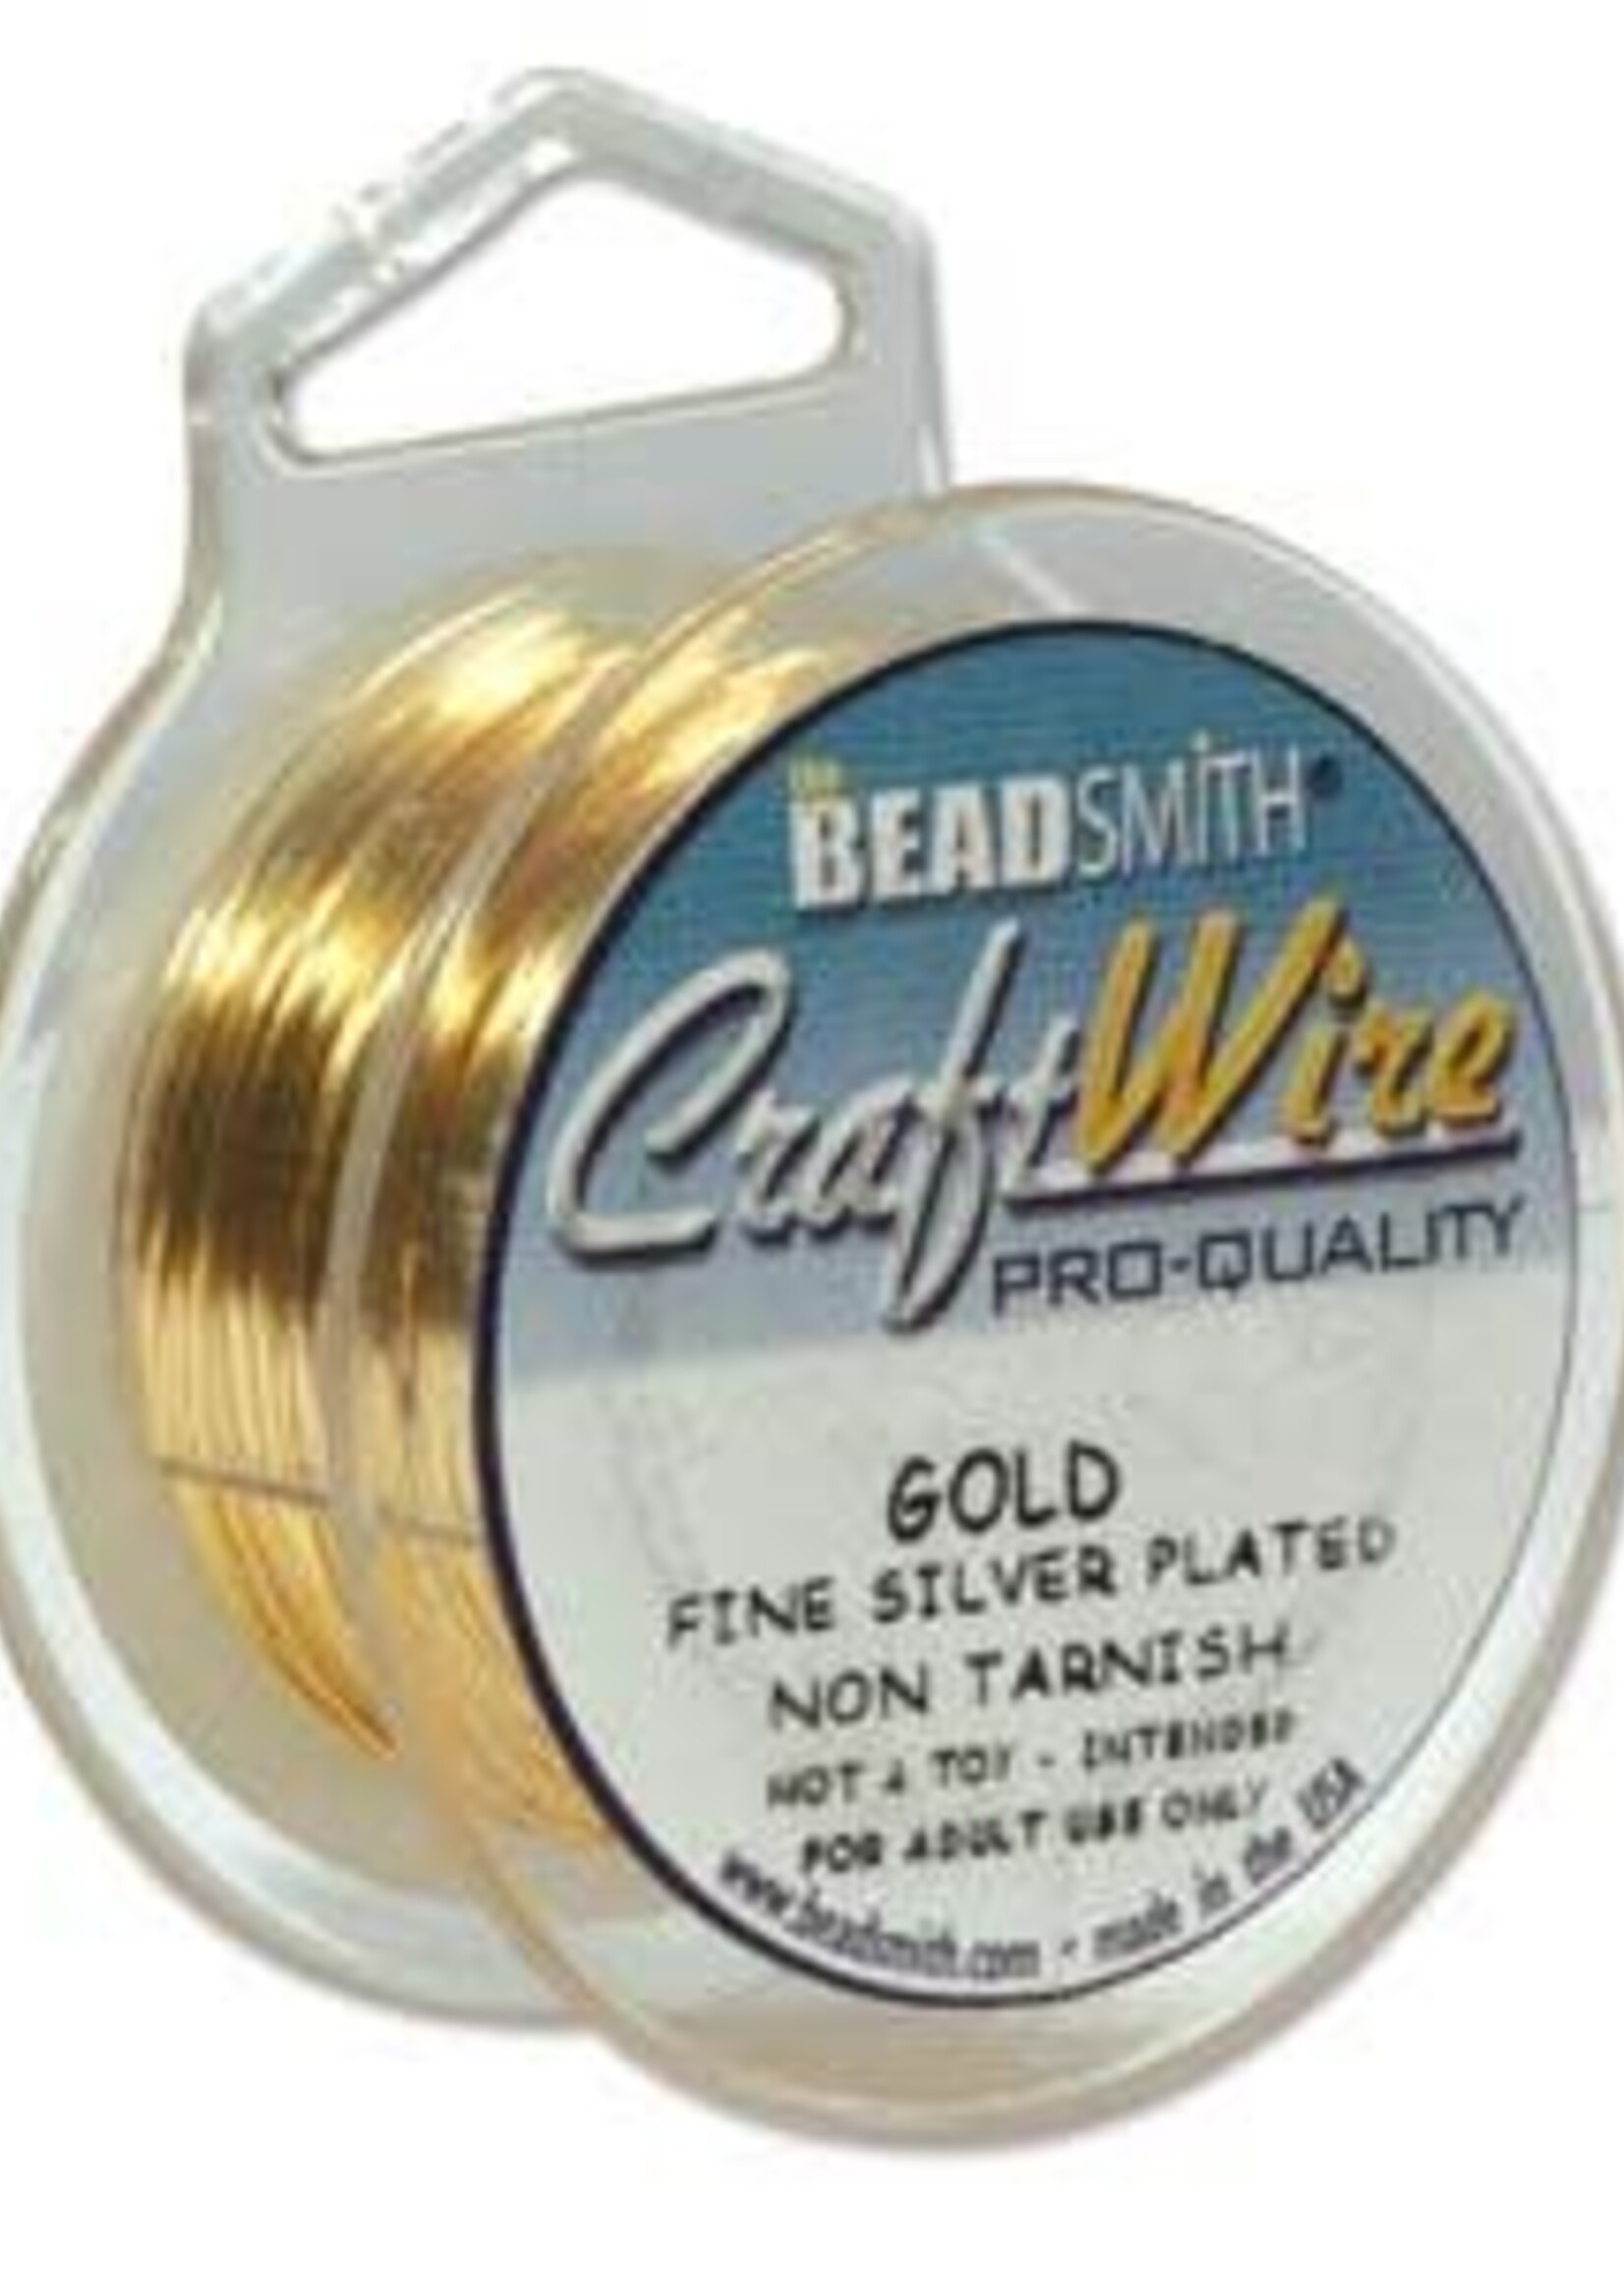 Craft Wire 18ga Round Gold Plate 4yds